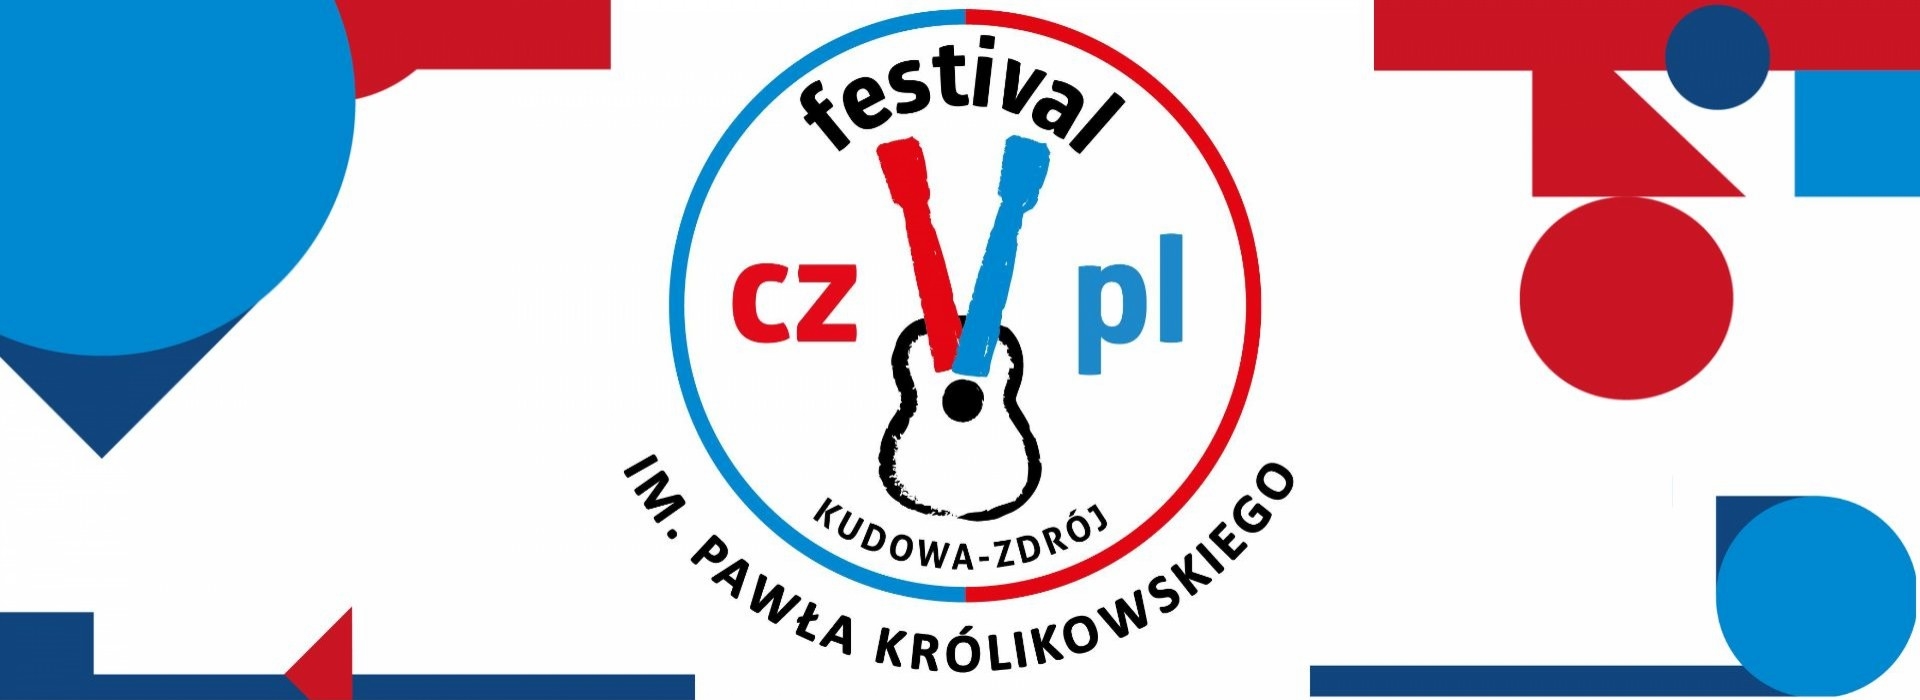 Jan Królikowski o VII edycji CZ-PL Festival w Kudowie Zdroju